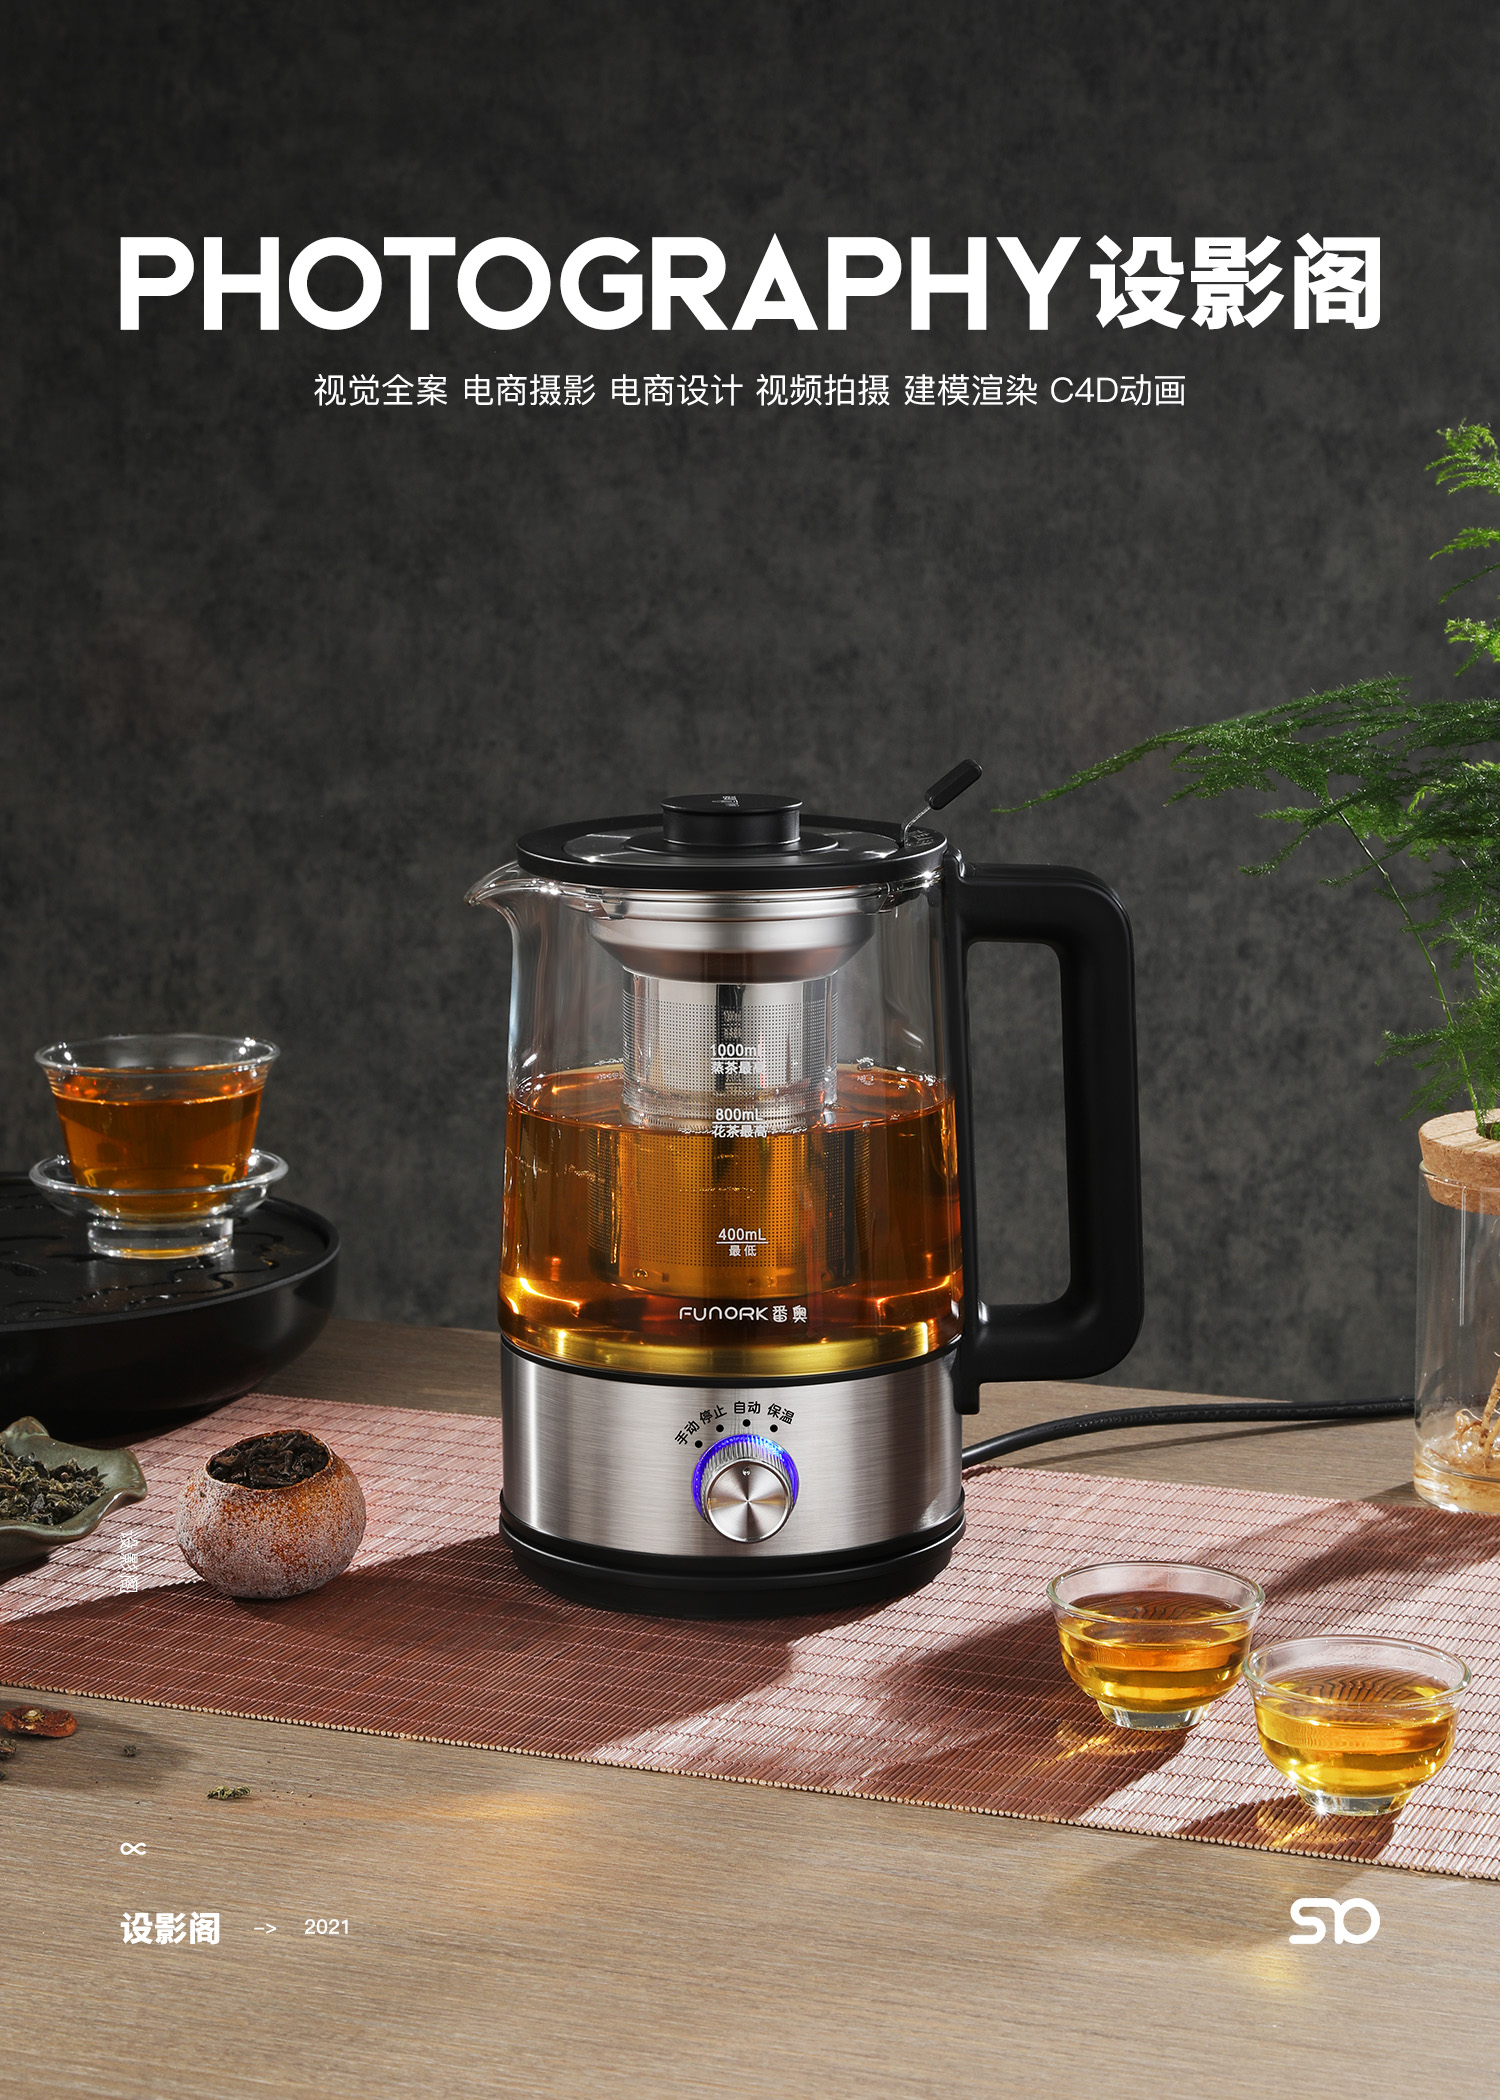 煮茶器 产品拍摄 x 2